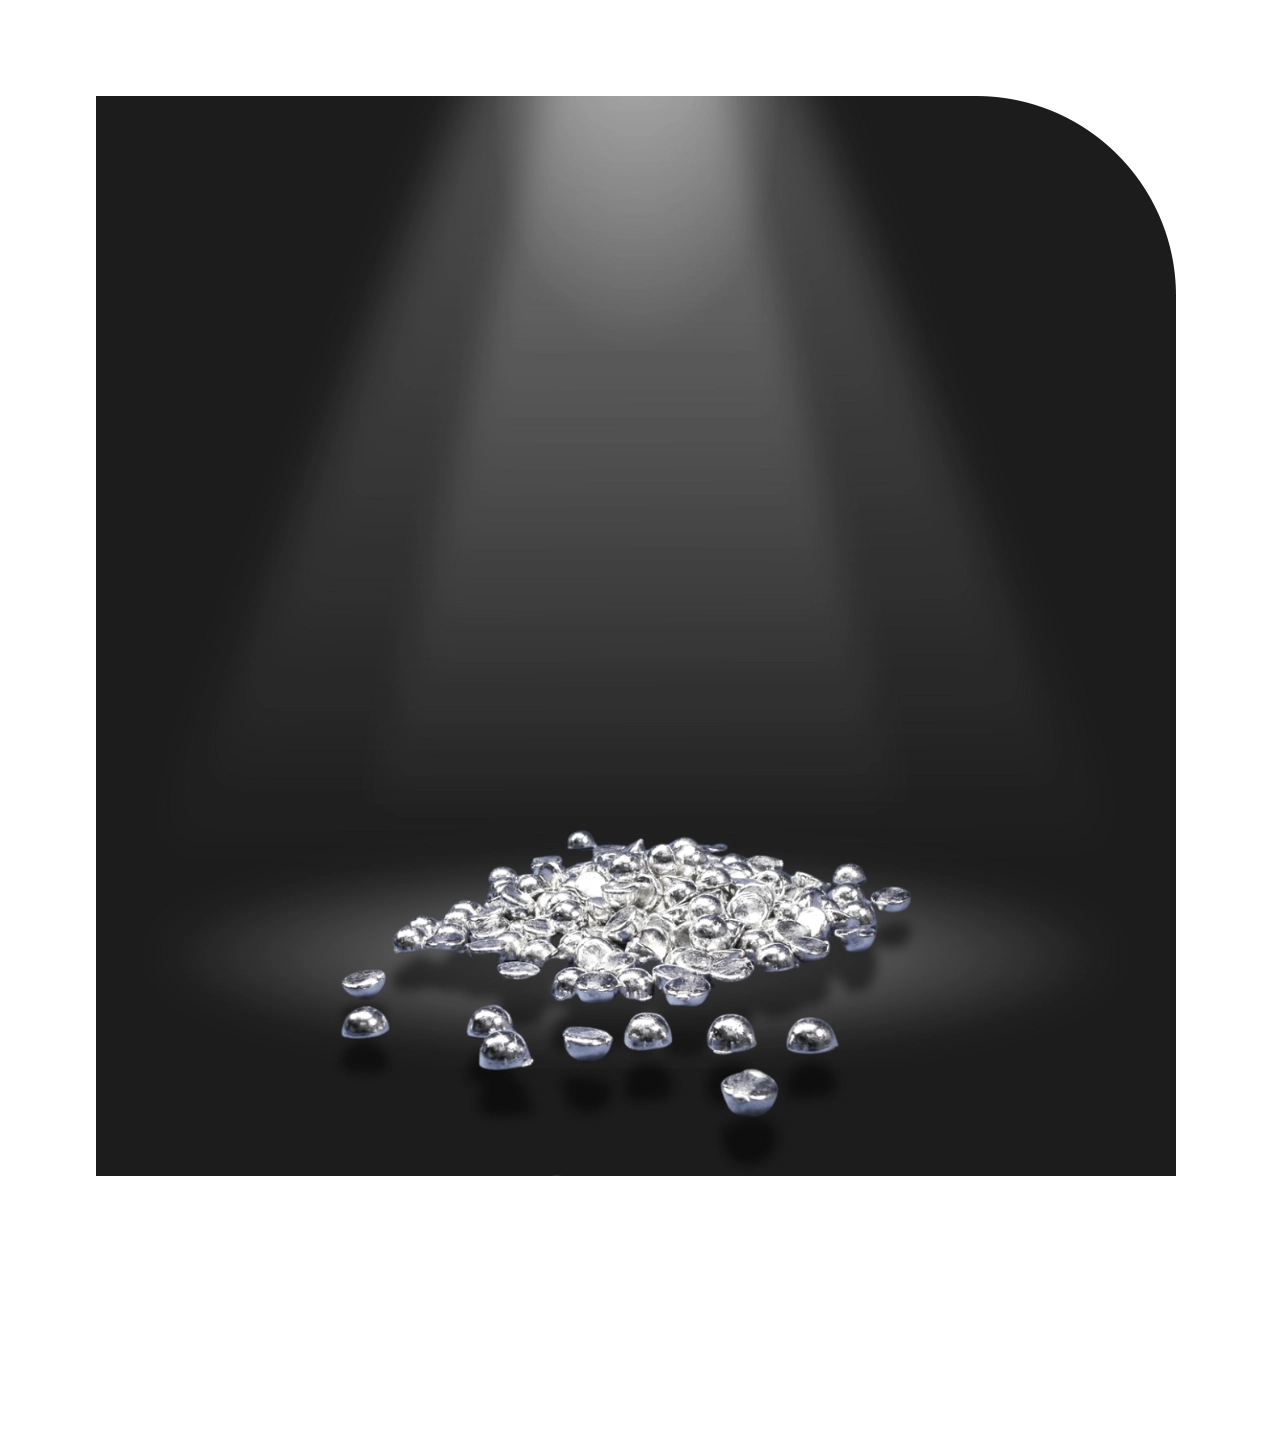 Hochreines Silbergranulat mit 99,99% Reinheit, in gesiebten und ungesiebten Varianten erhältlich. Gesiebte Granulatgröße 2,5-4 mm, ungesiebt 2,5x15 mm. Verschiedene Verpackungsgrößen verfügbar.